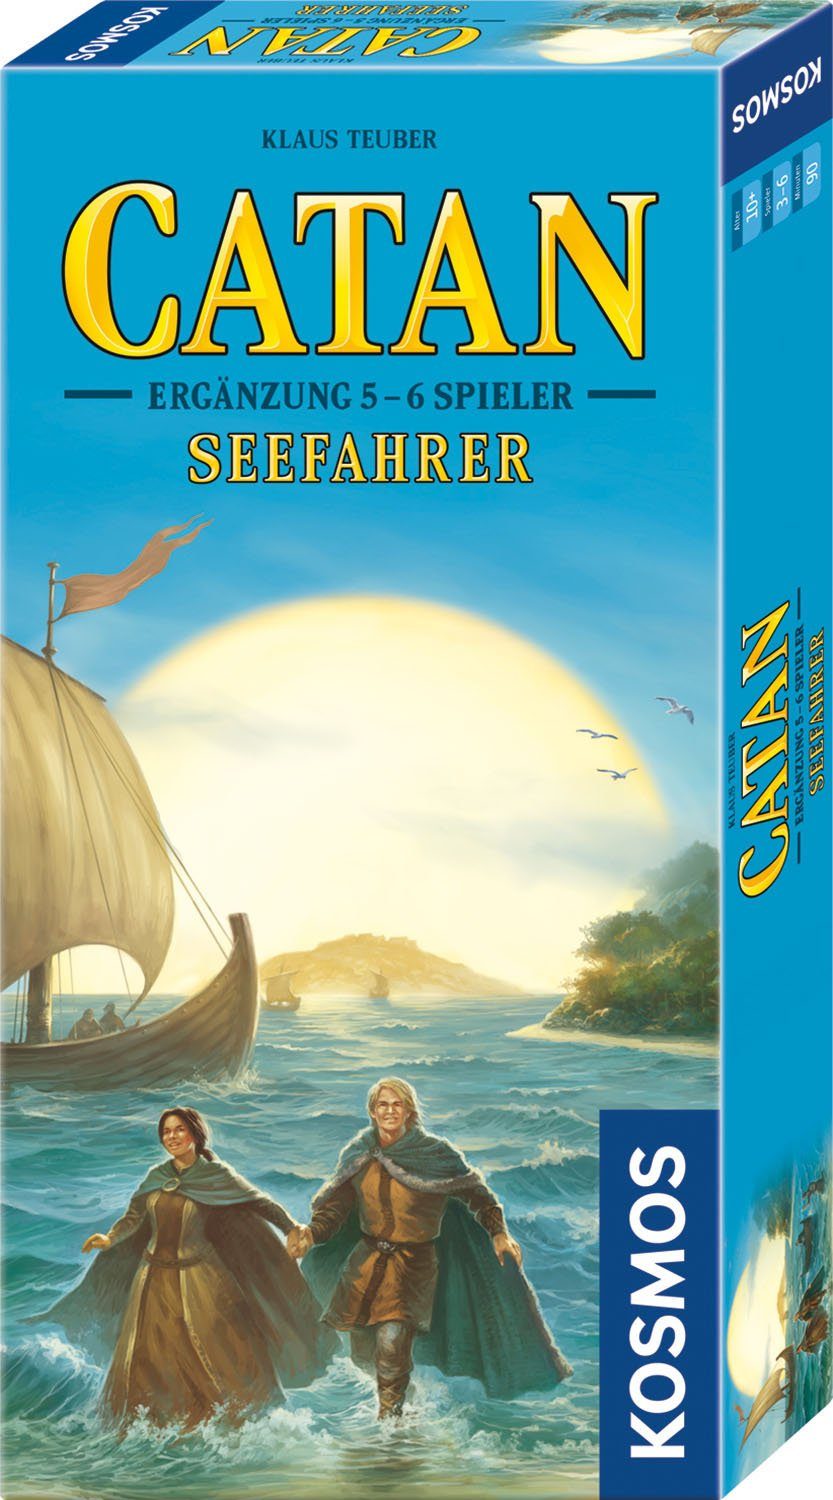 Kosmos Spiel, Catan - Made Seefahrer - Spieler Germany in Edition 5-6 - 2022, Ergänzung